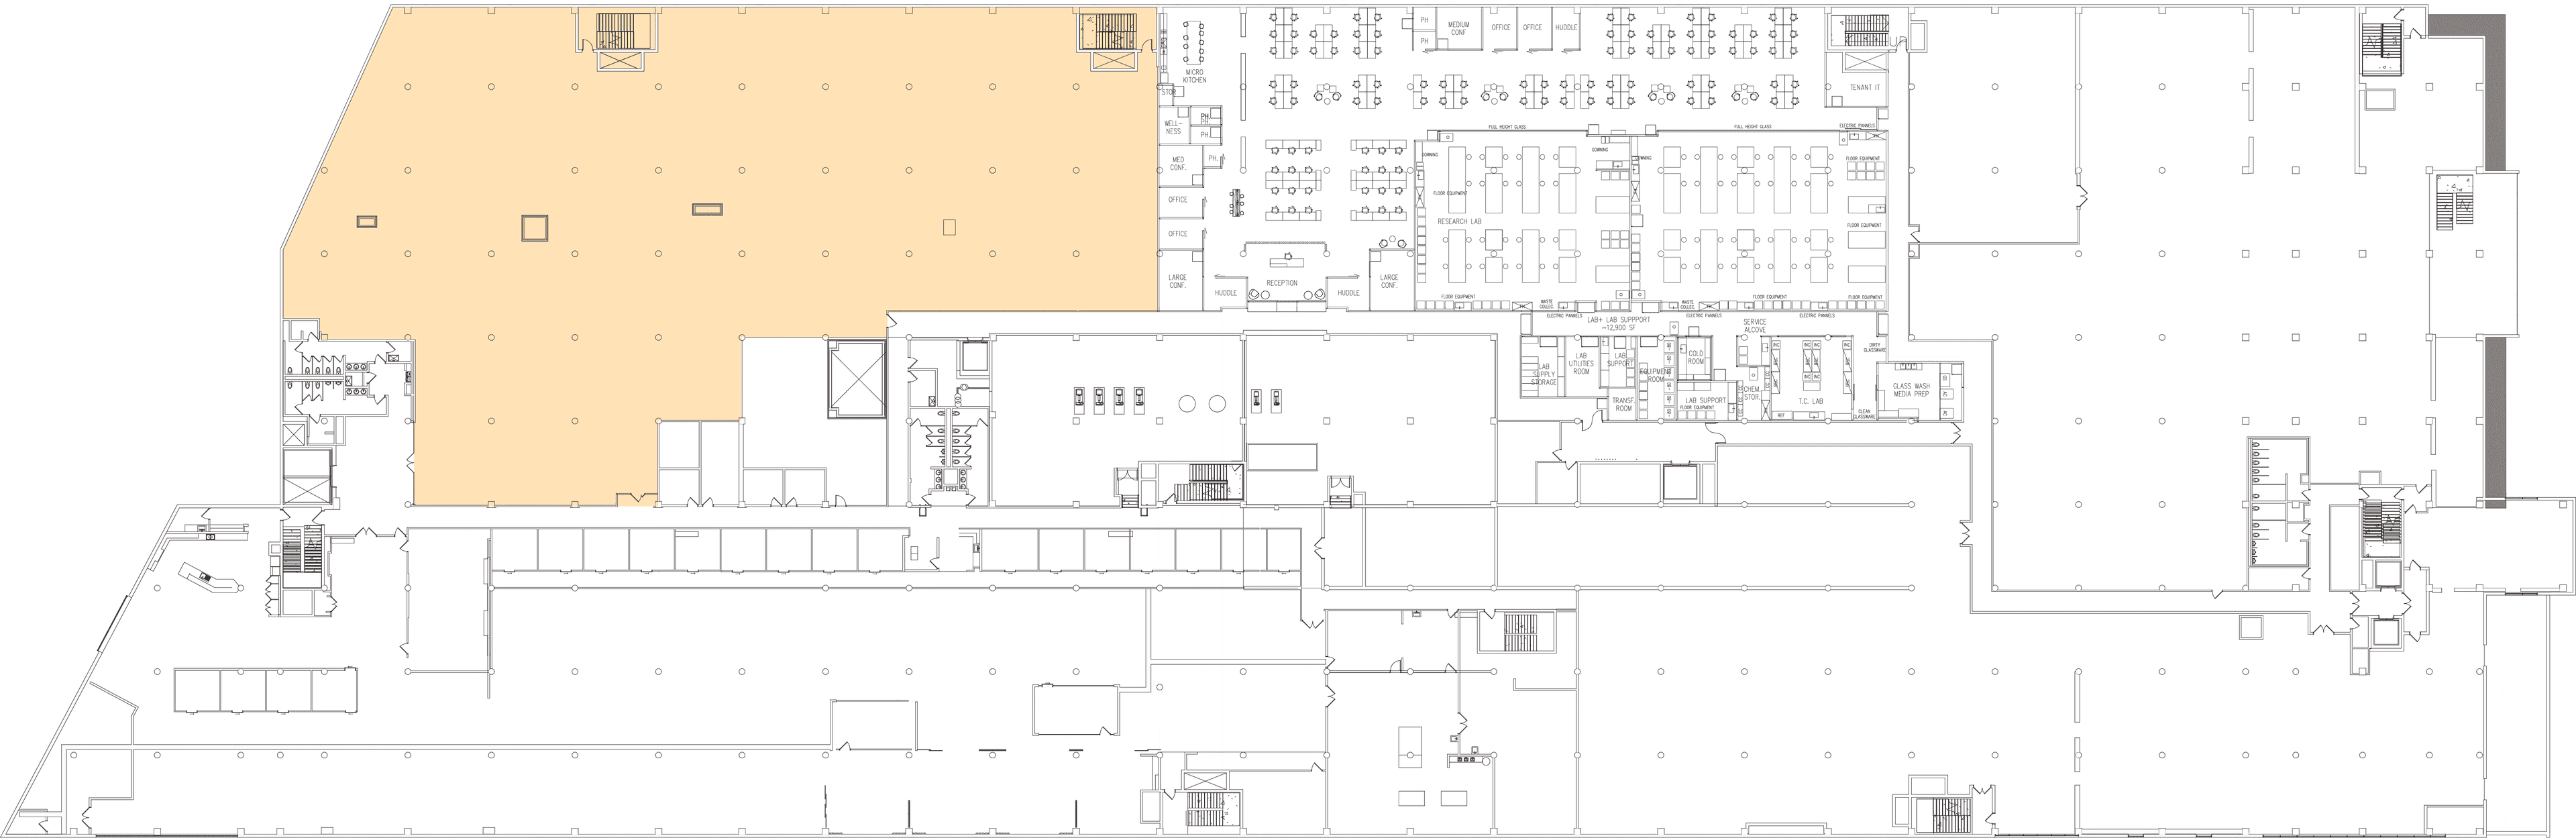 floor-2-shell-plan